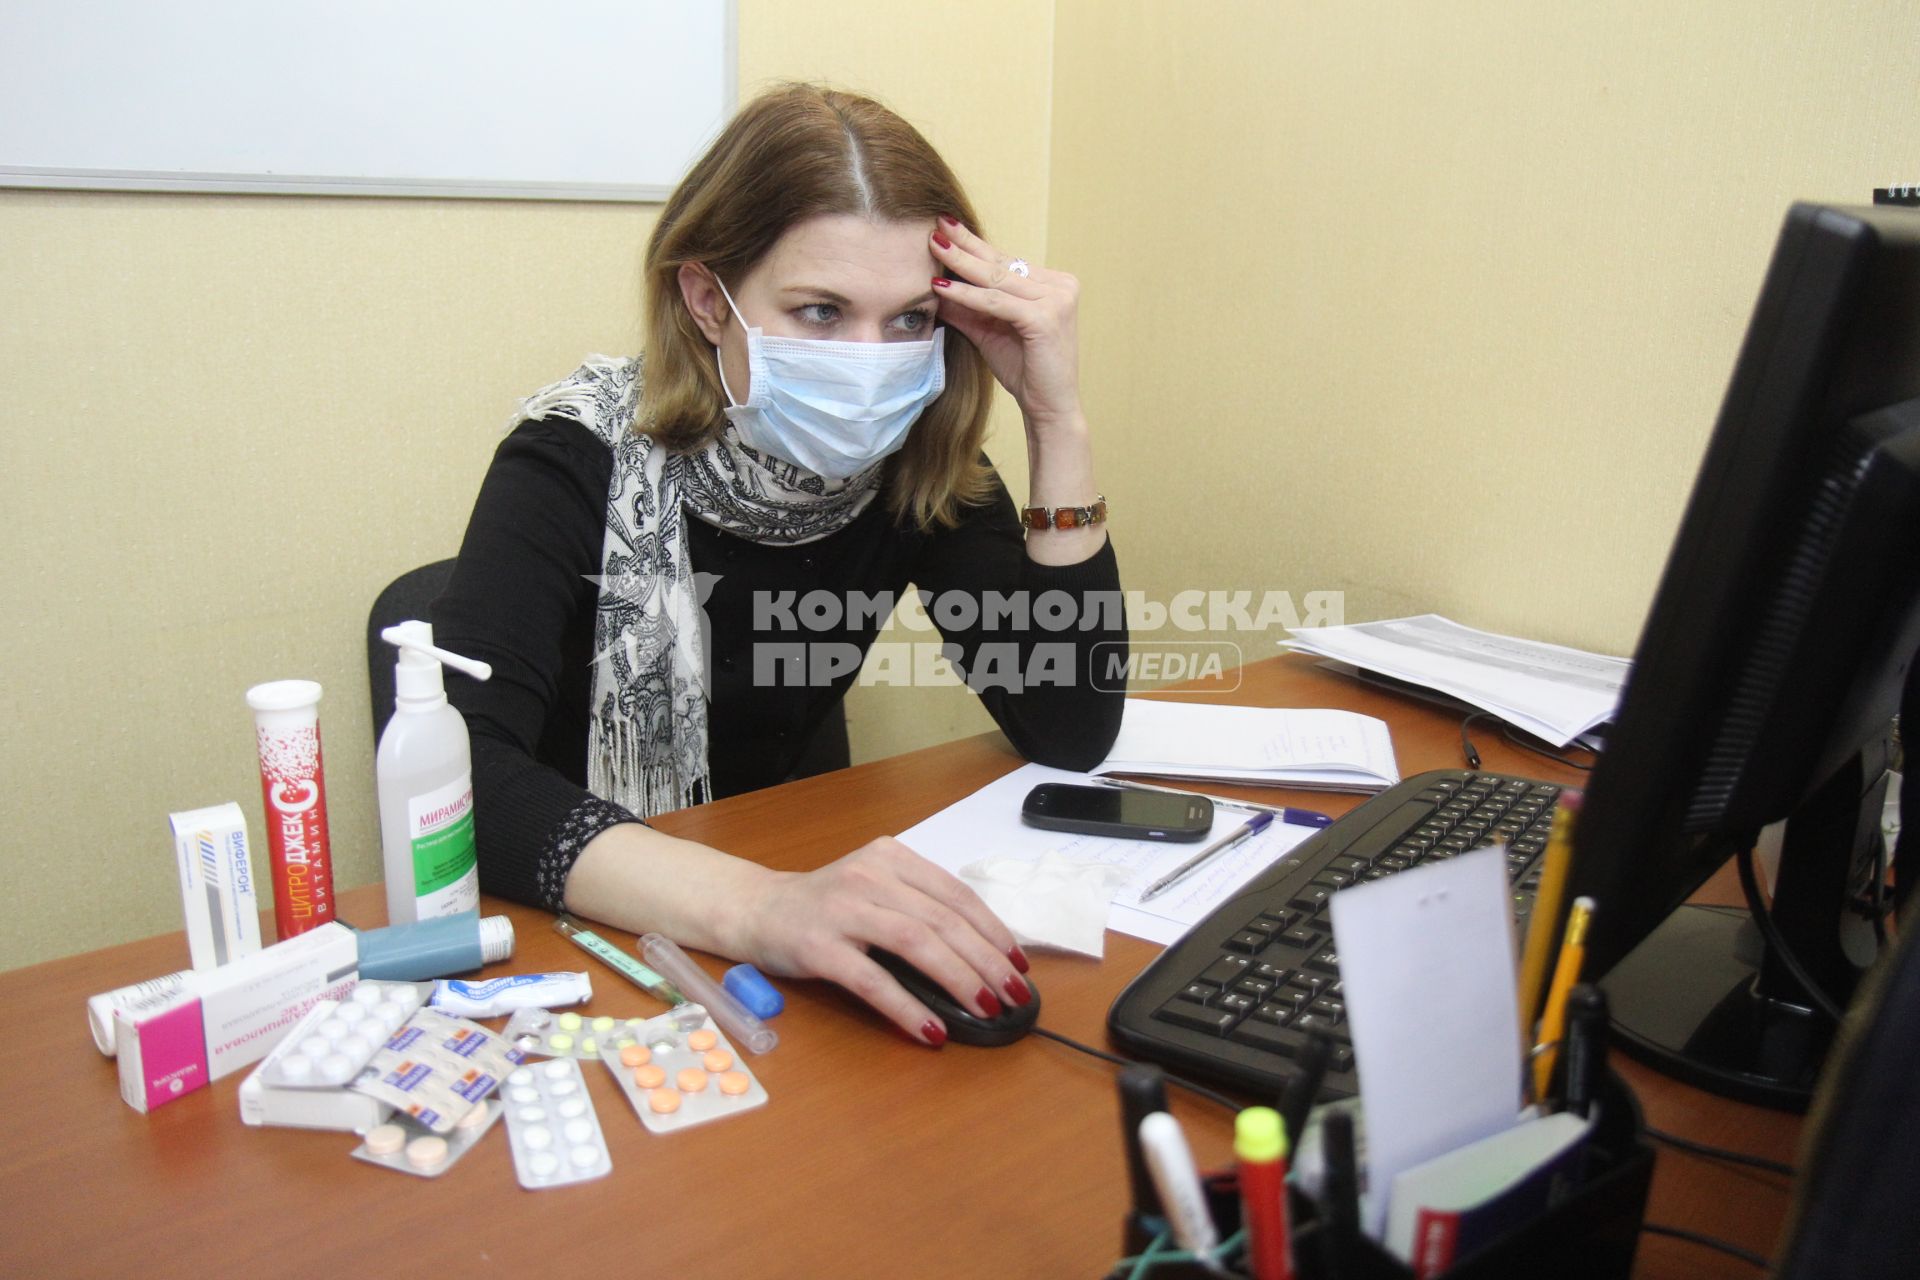 Иркутск. Девушка на рабочем месте в офисе  лечится от простуды.